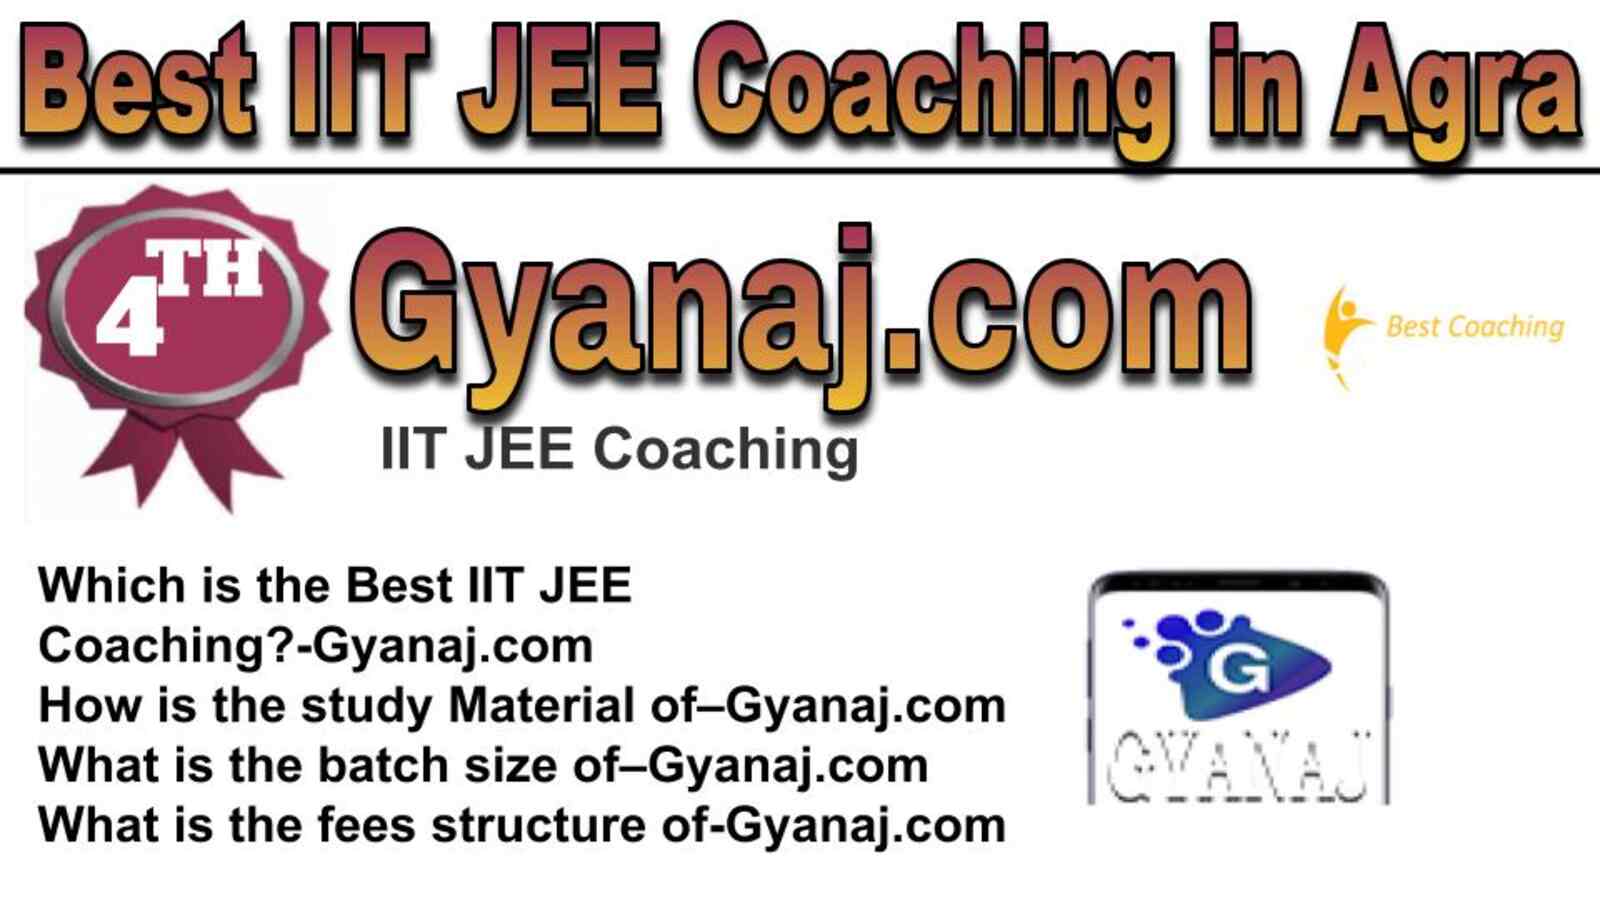 Rank 4 best IIT JEE coaching in Agra